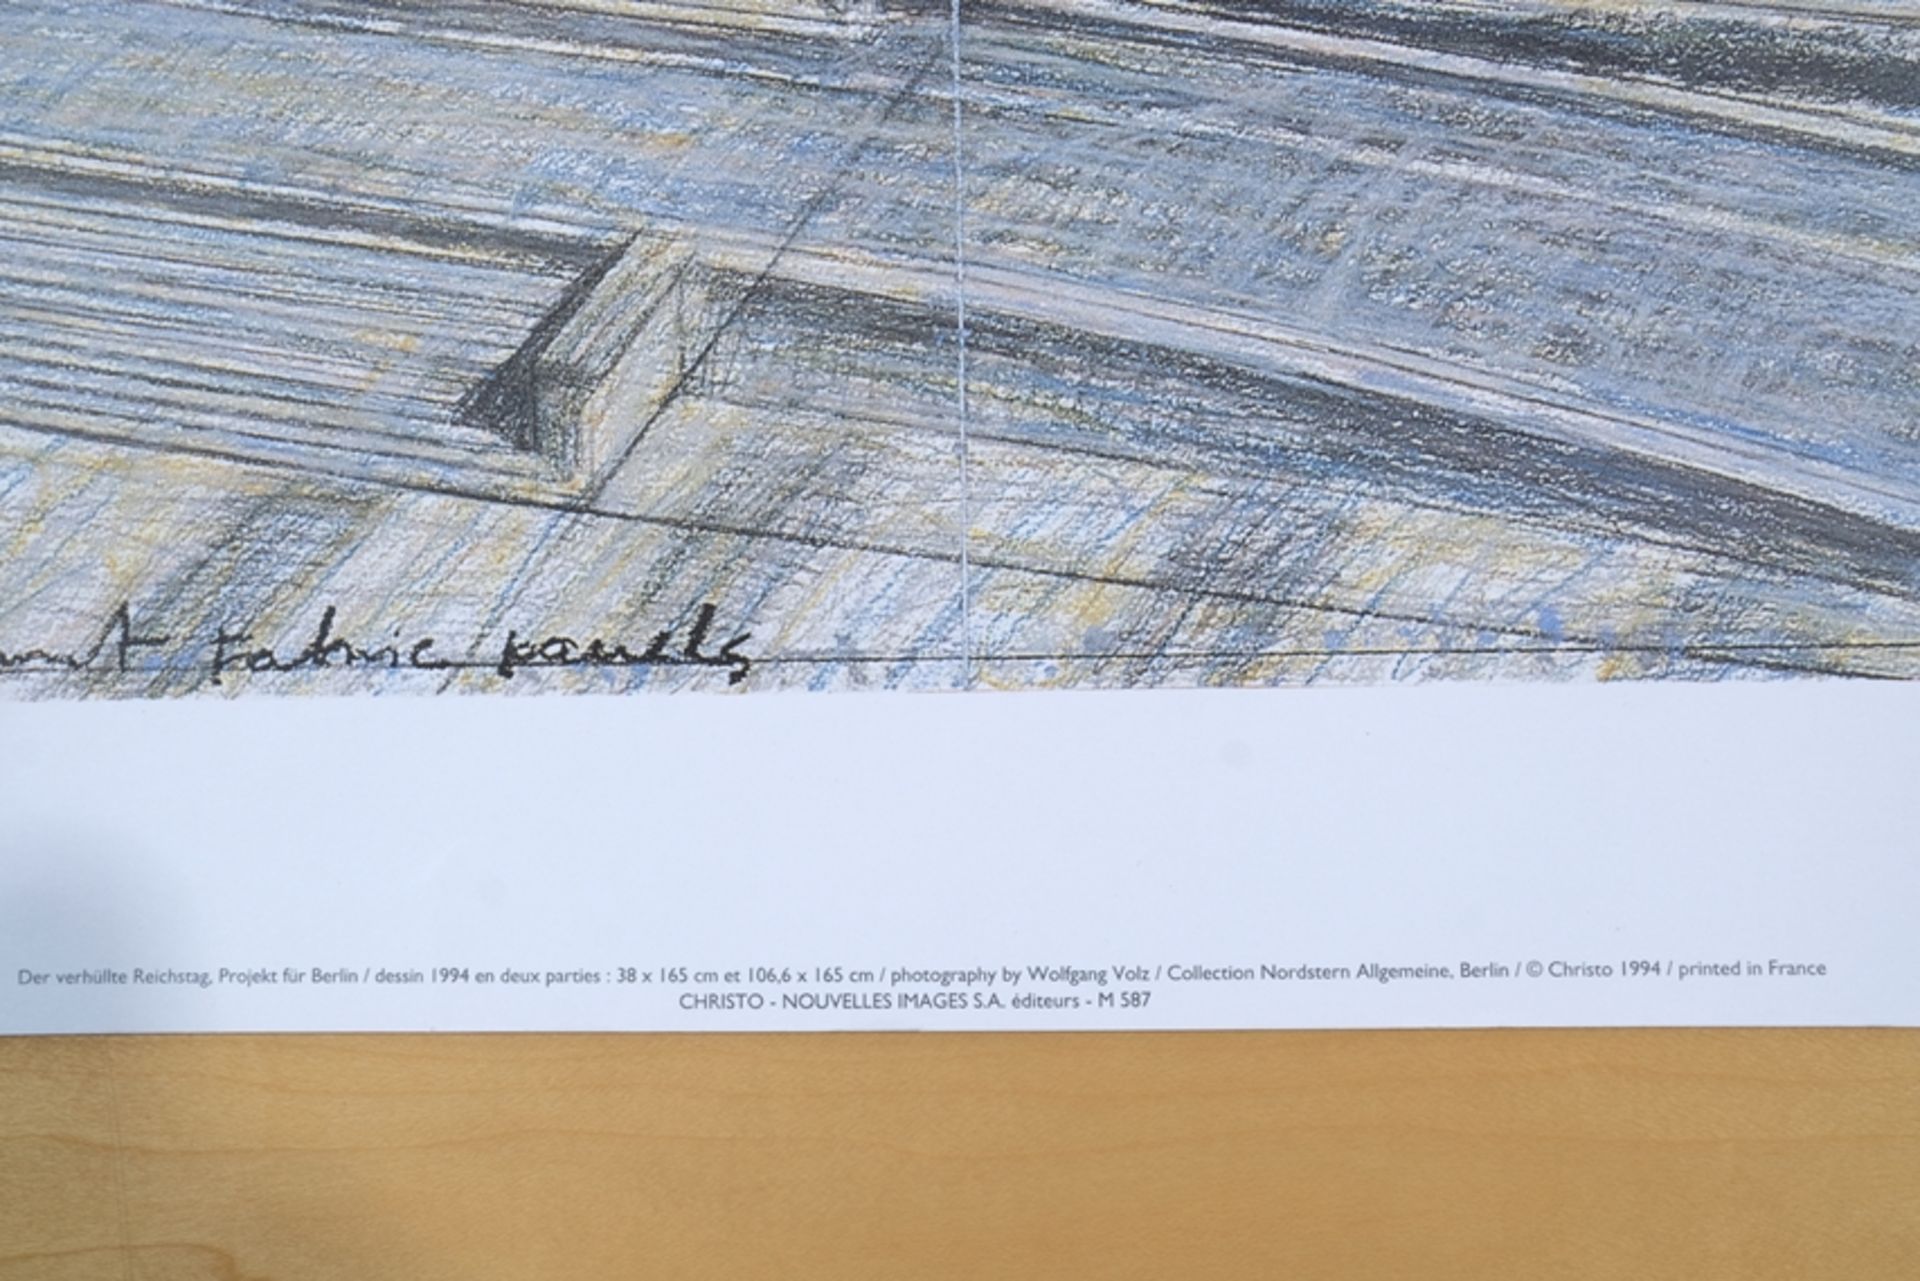 Christo (1935-2020) "Der verhüllte Reichstag", 1994, high-quality offset print. - Image 3 of 4